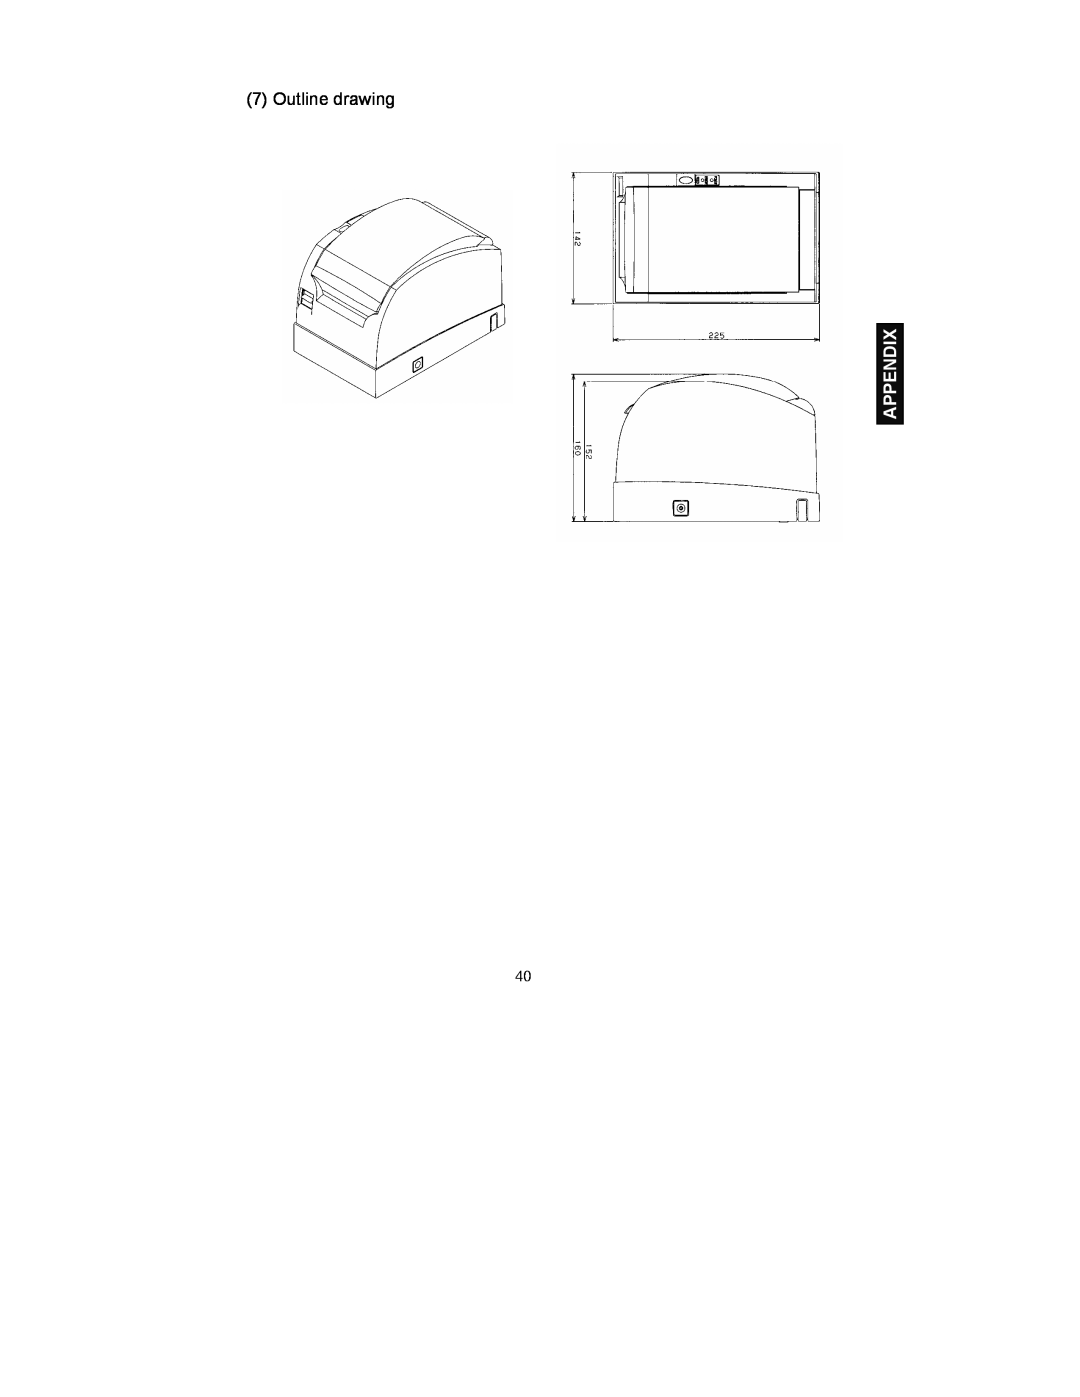 Fujitsu FP-410 user manual Appendix, Outline drawing 